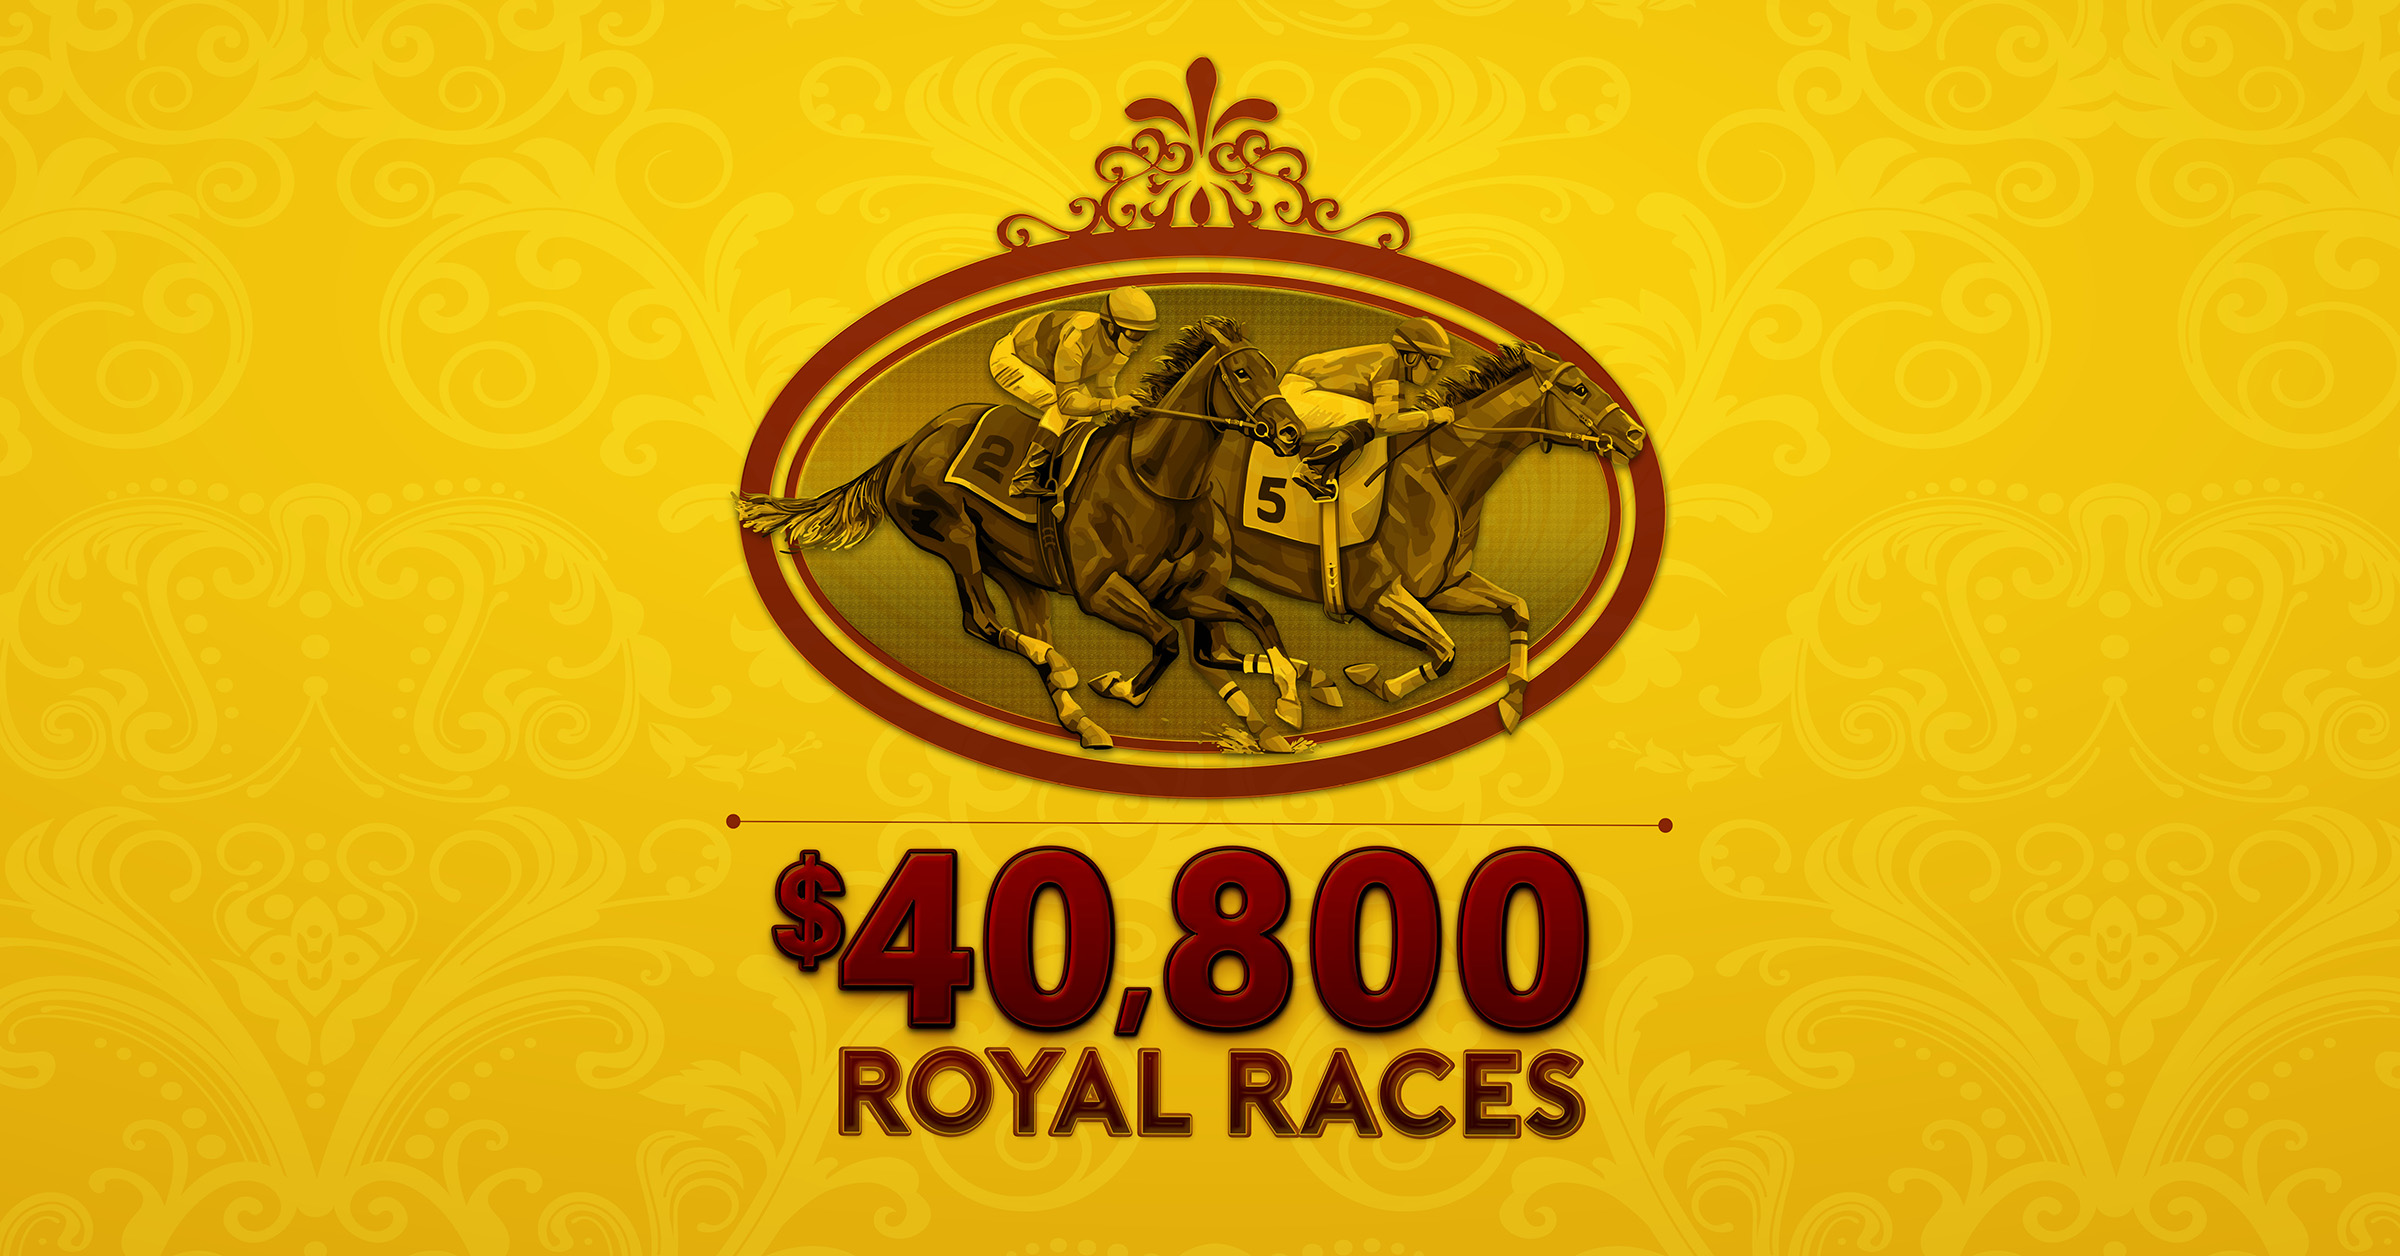 $40,800 Royal Races & Winning Suit Drawings